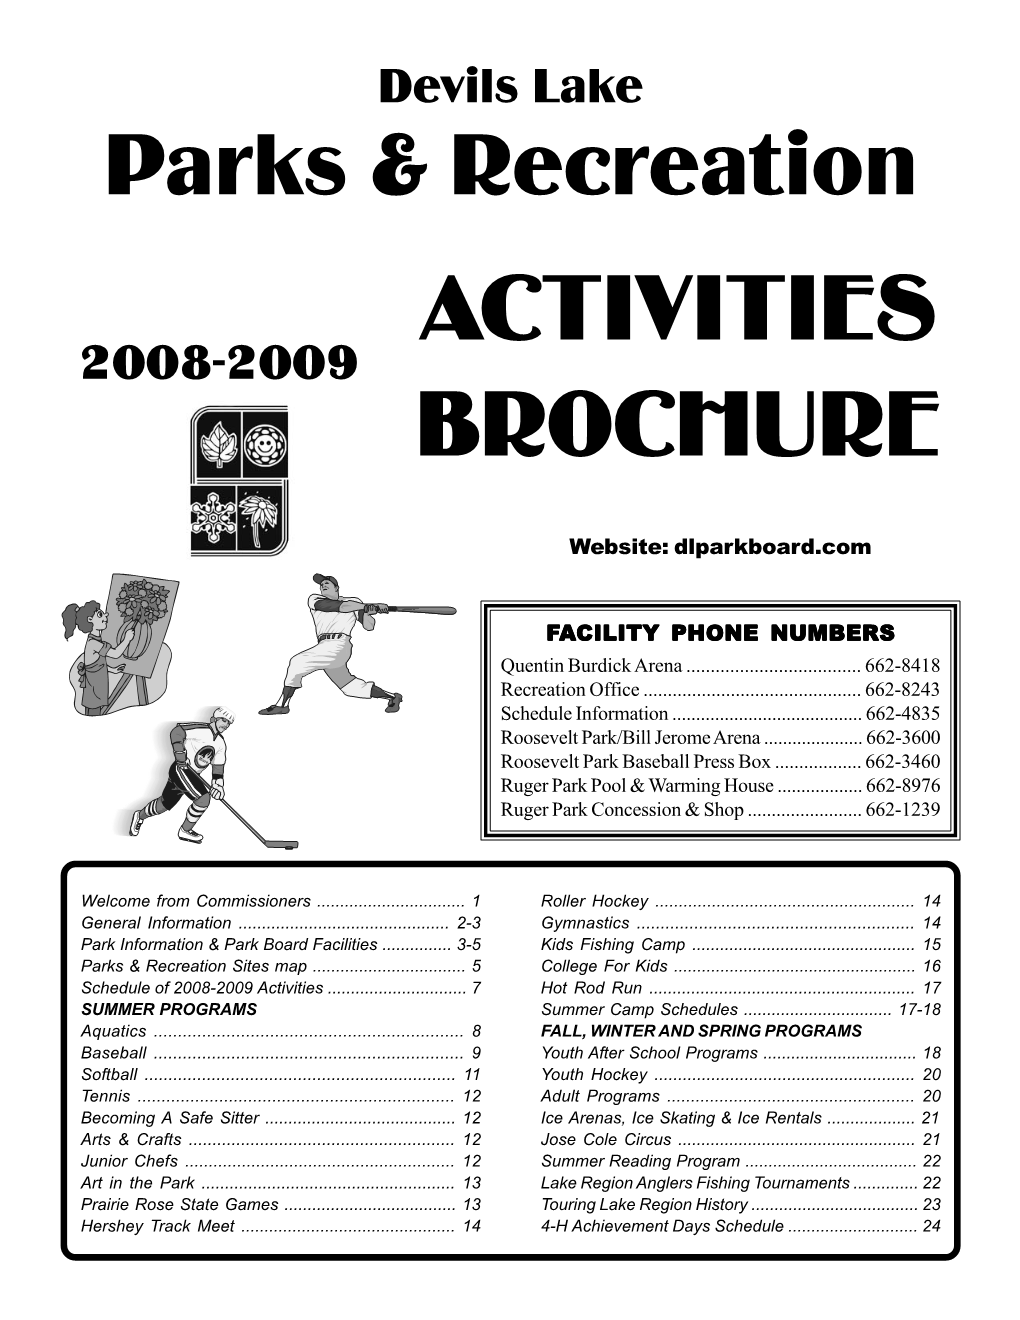 Activities Brochure